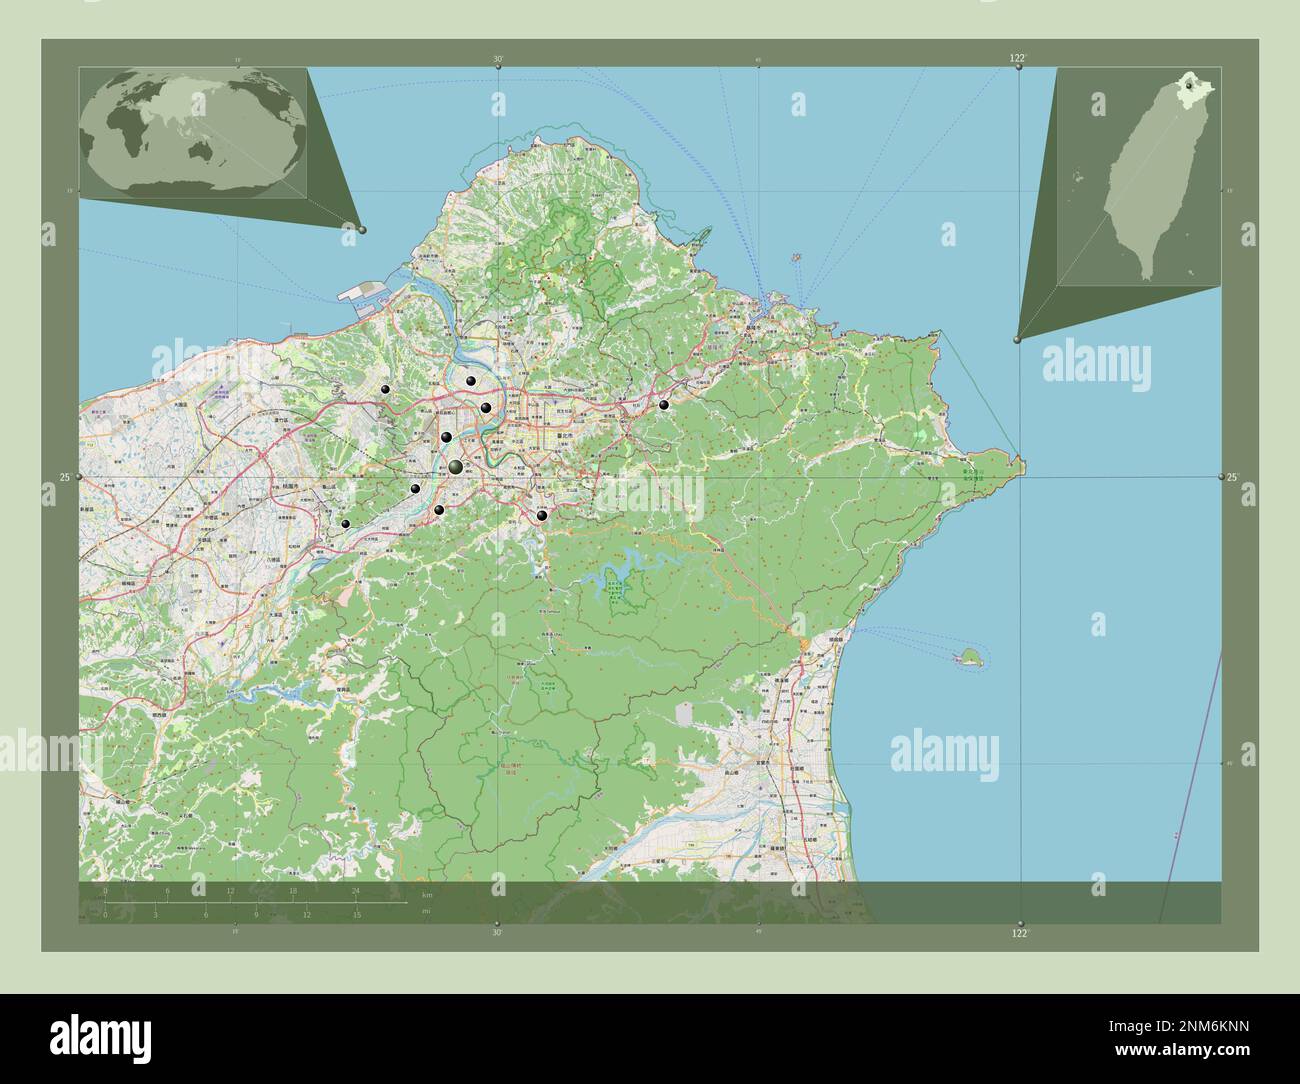 New Taipei City, Sondergemeinde Taiwan. Straßenkarte Öffnen. Standorte der wichtigsten Städte der Region. Eckkarten für zusätzliche Standorte Stockfoto